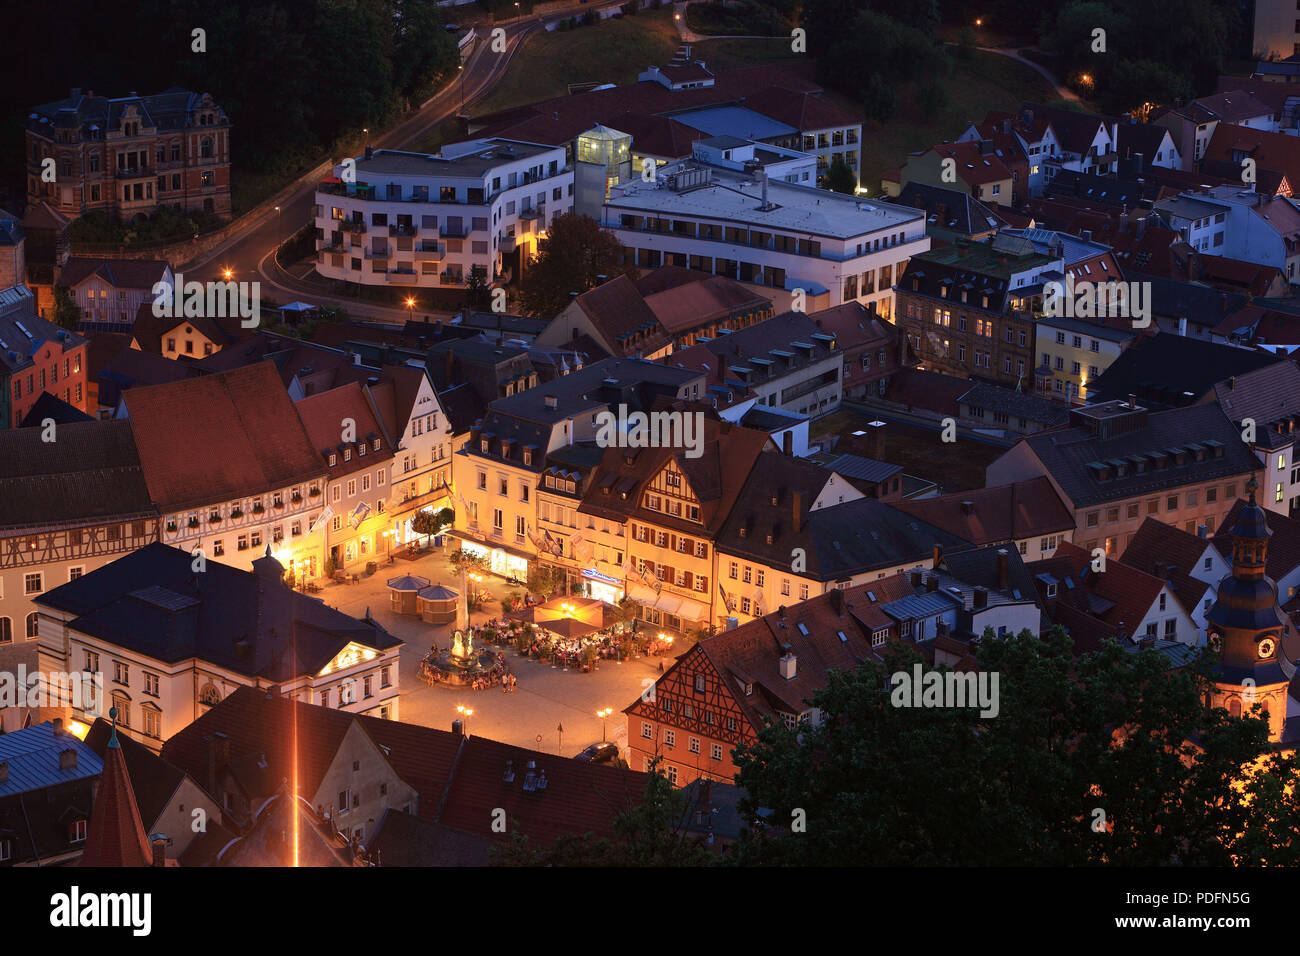 Marktplatz am Abend, Kulmbach, Oberfranken, Bayern, Deutschland Stockfoto